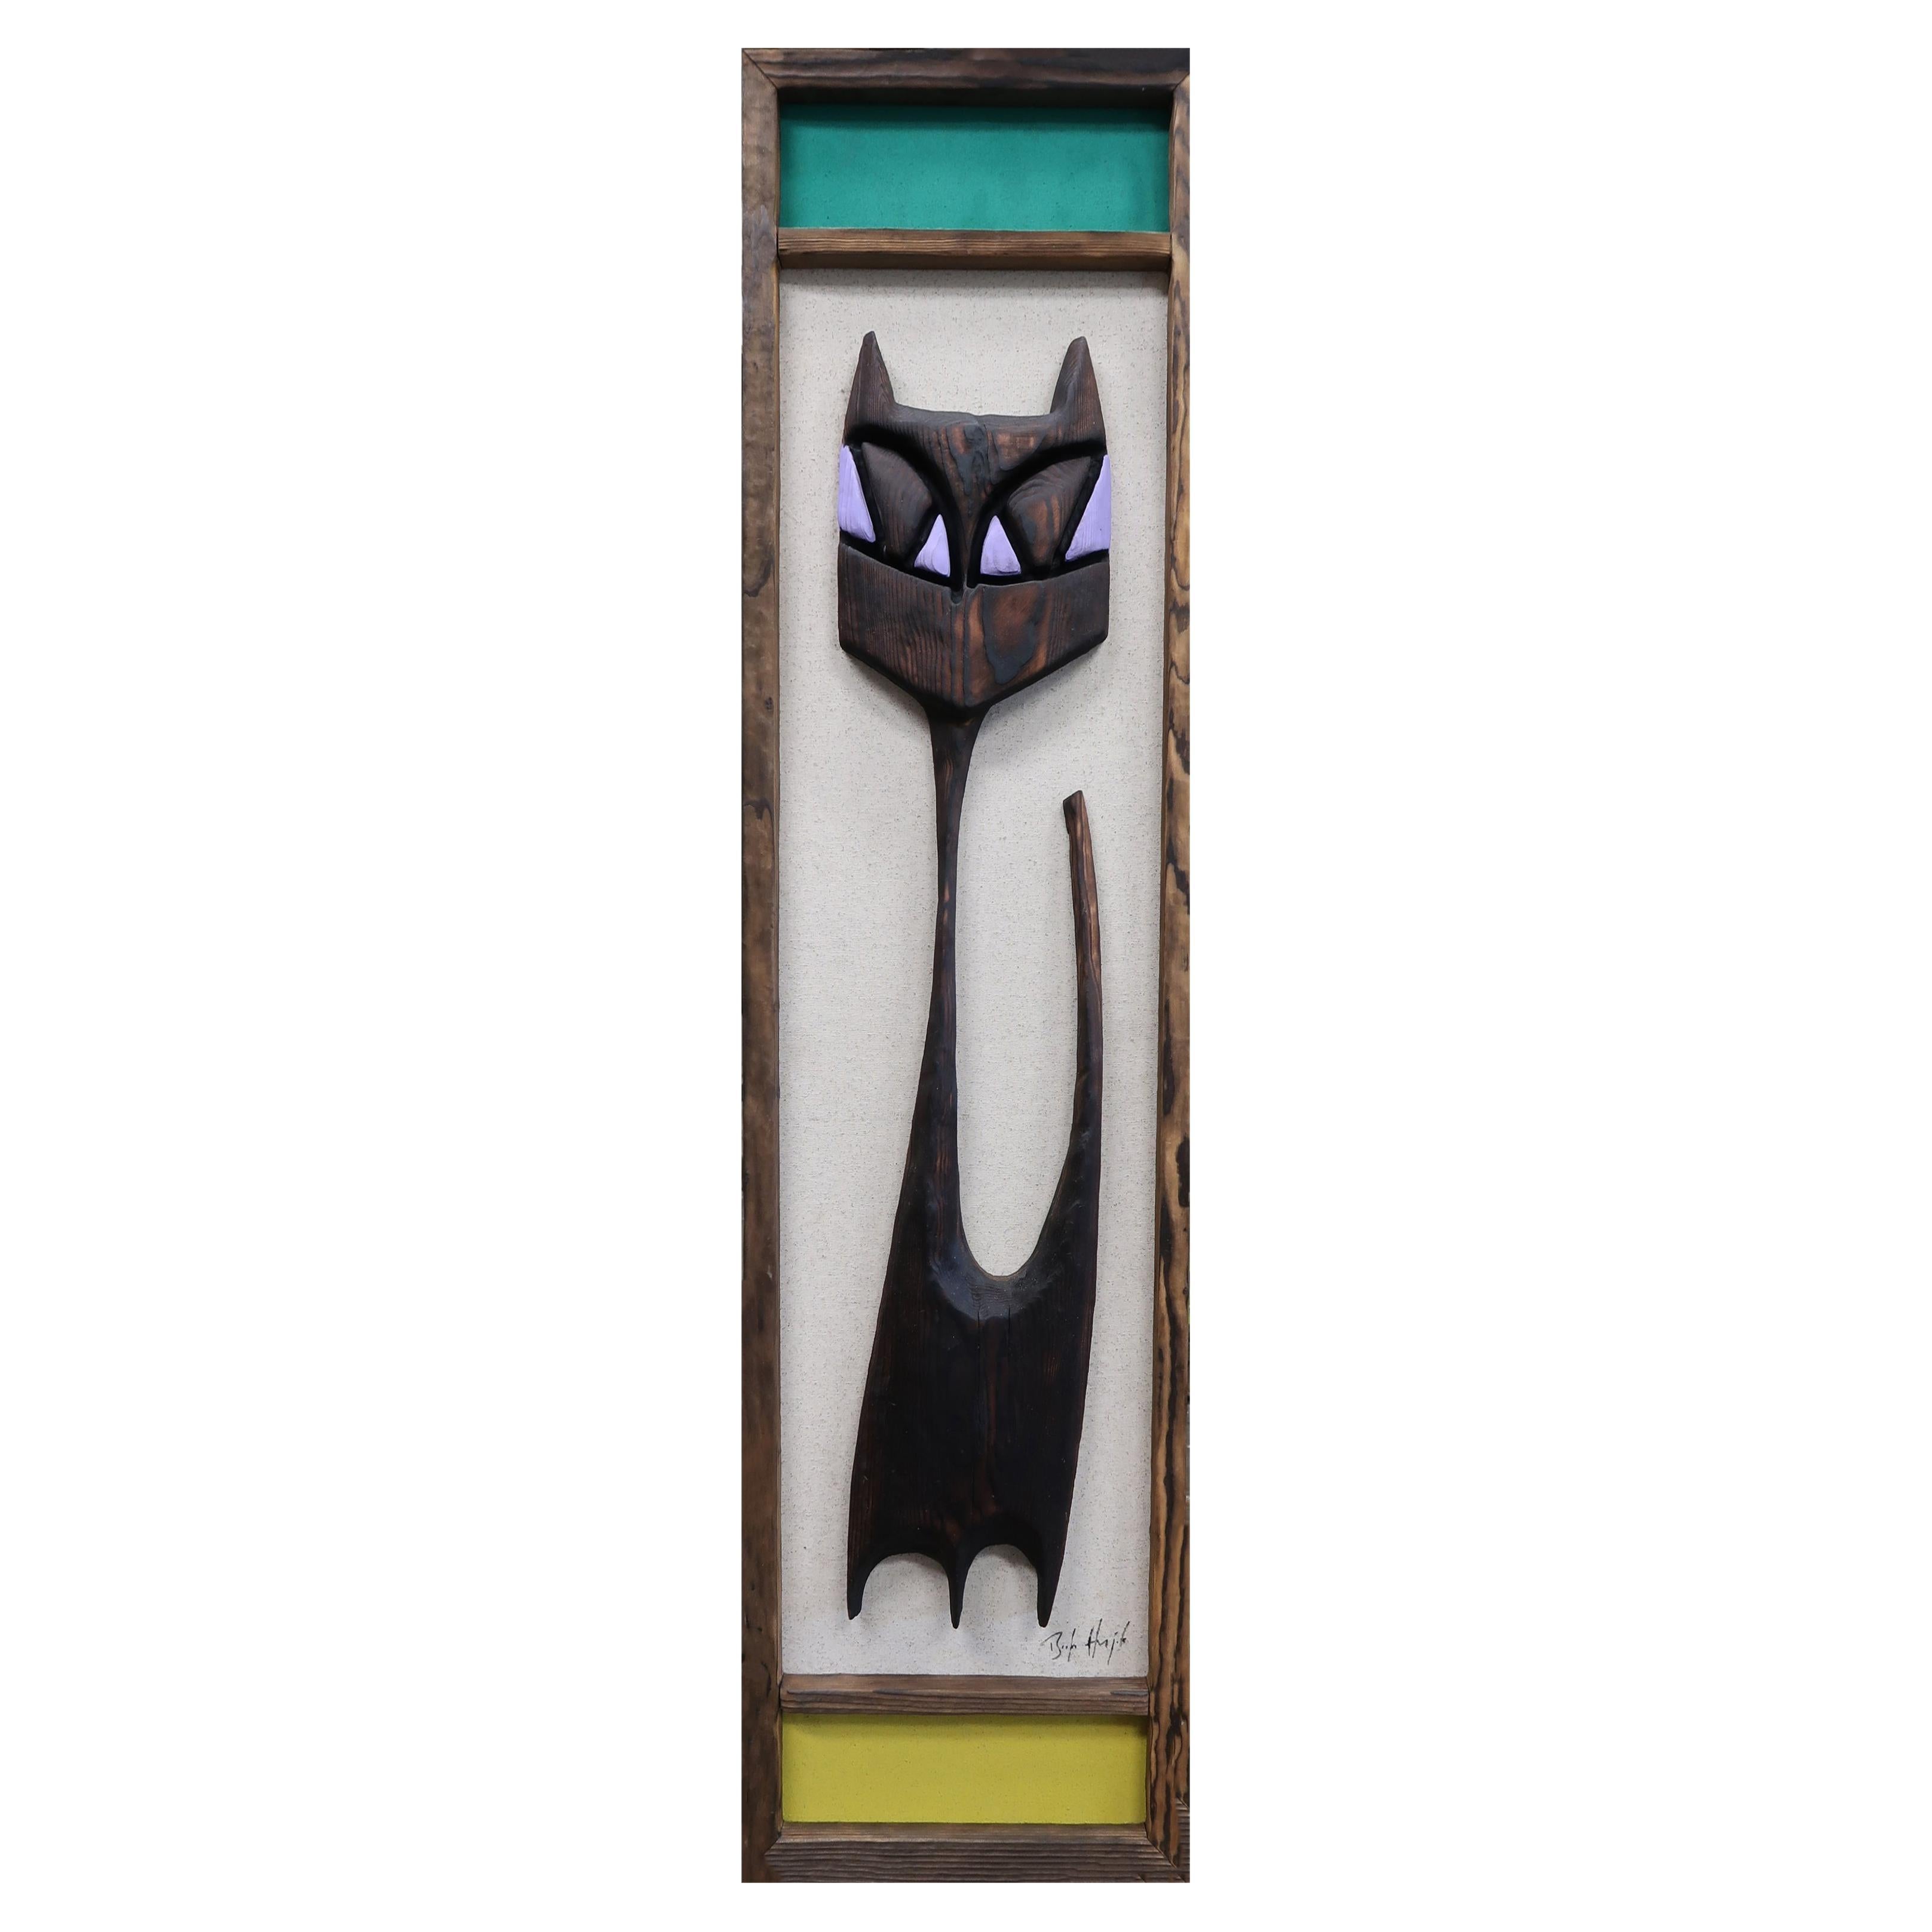 Bosko Hrnjak Original Modernist Framed Art Tall Tabby Cat Wall Sculpture Carving For Sale